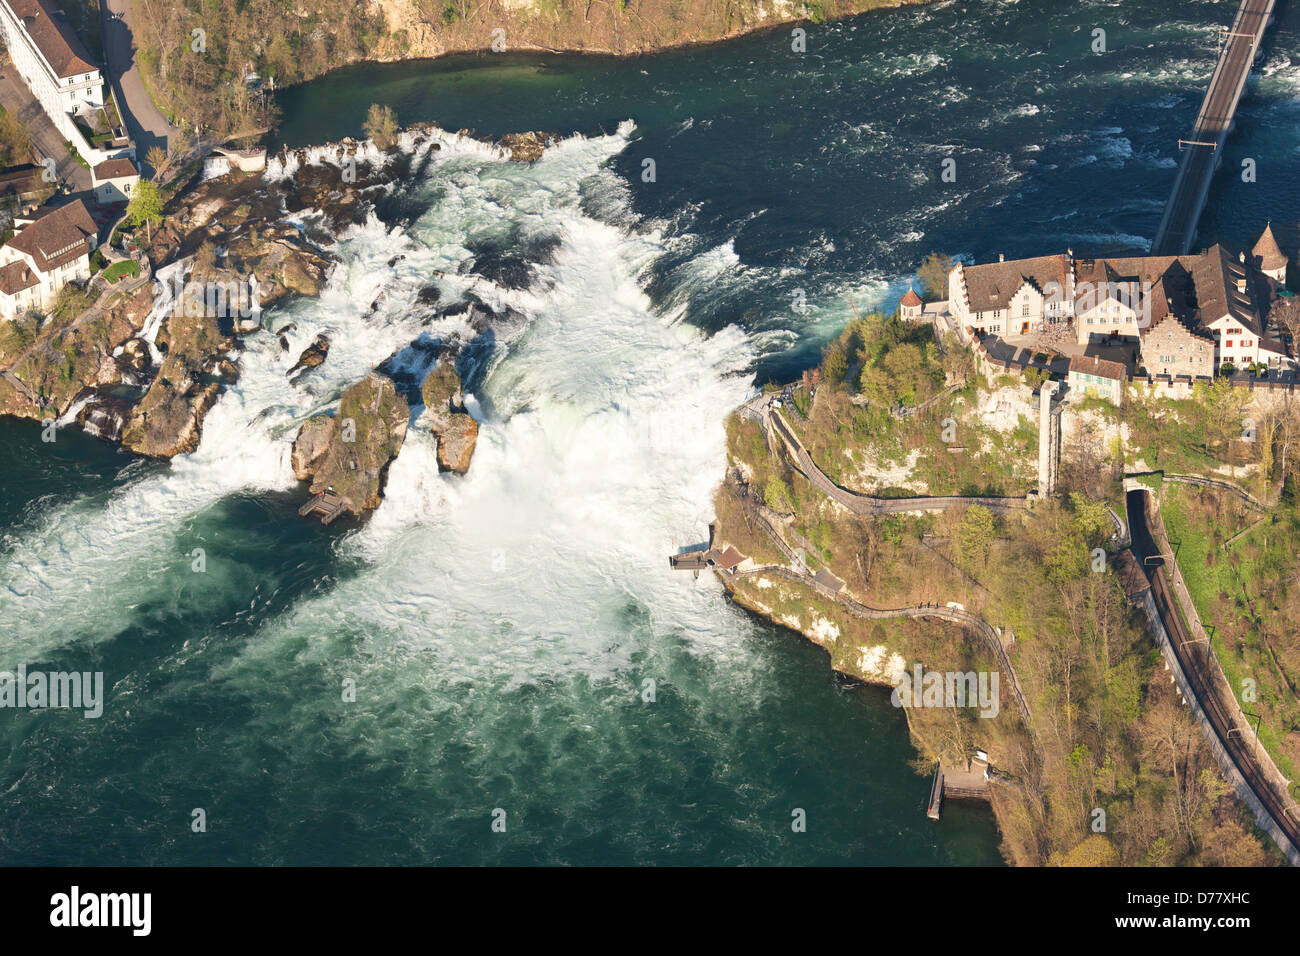 VISTA AÉREA. Gran cascada en el río Rin. Entre el Cantón de Schaffhausen (margen derecho) y el Cantón de Zurich, Suiza. Foto de stock